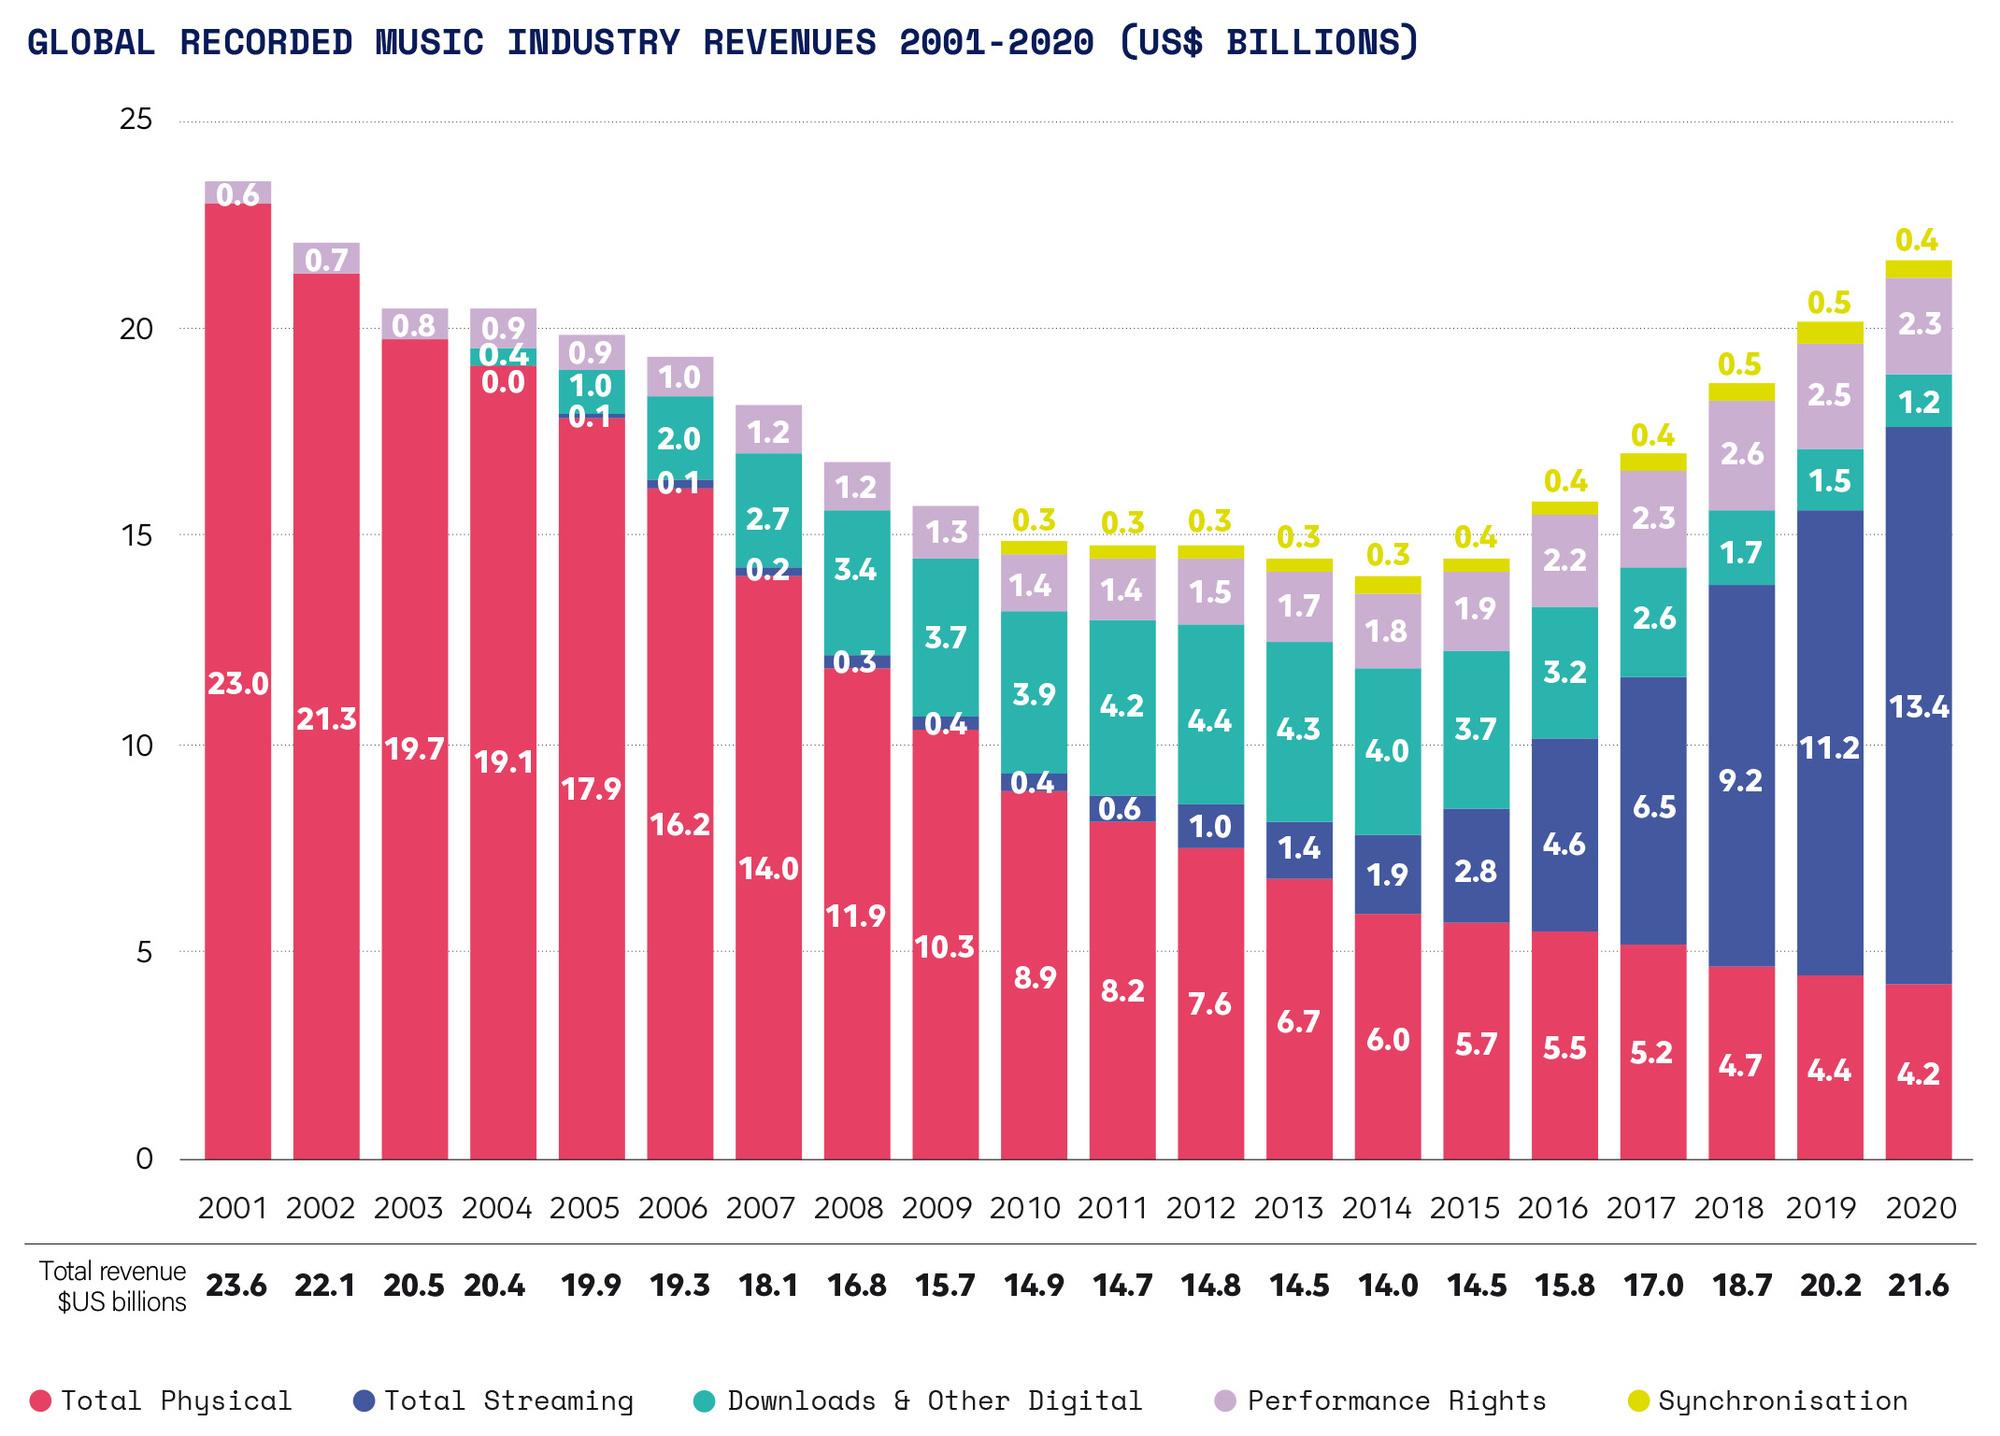 Revenus globaux de la musique enregistrée de 2001 à 2020, en milliards de dollars.